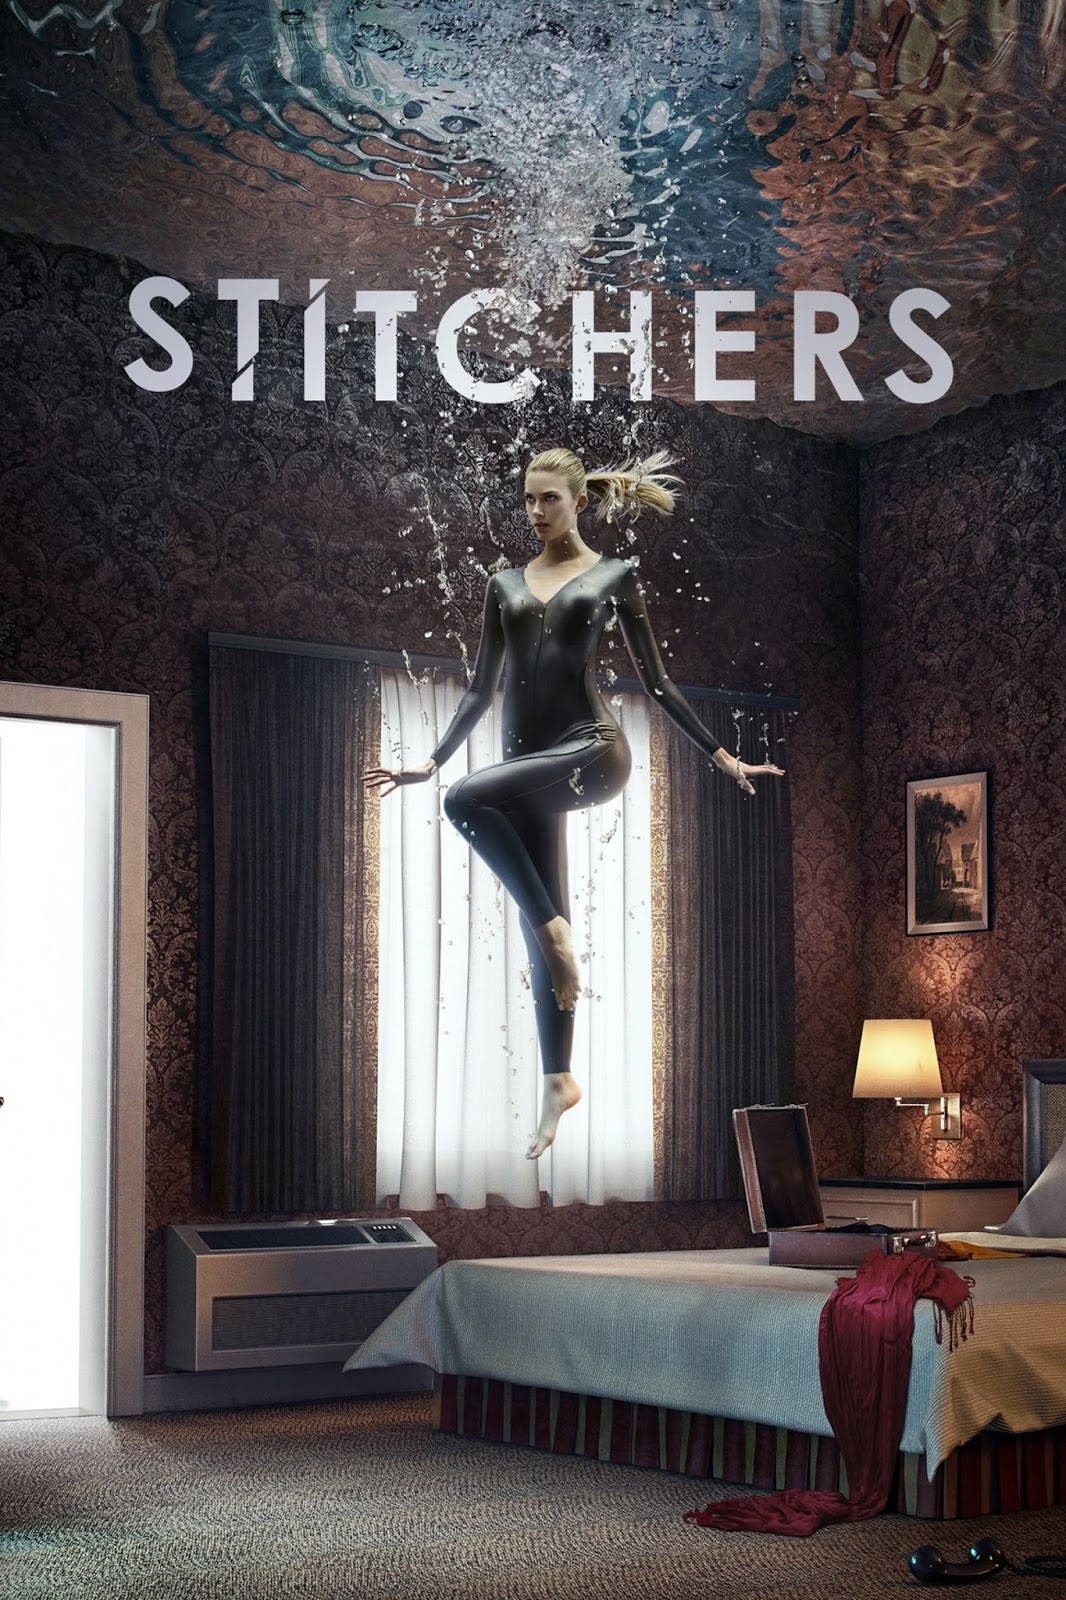 Stitchers 2015: Season 1, Episode 1, A Stitch in Time - Full (1/11)